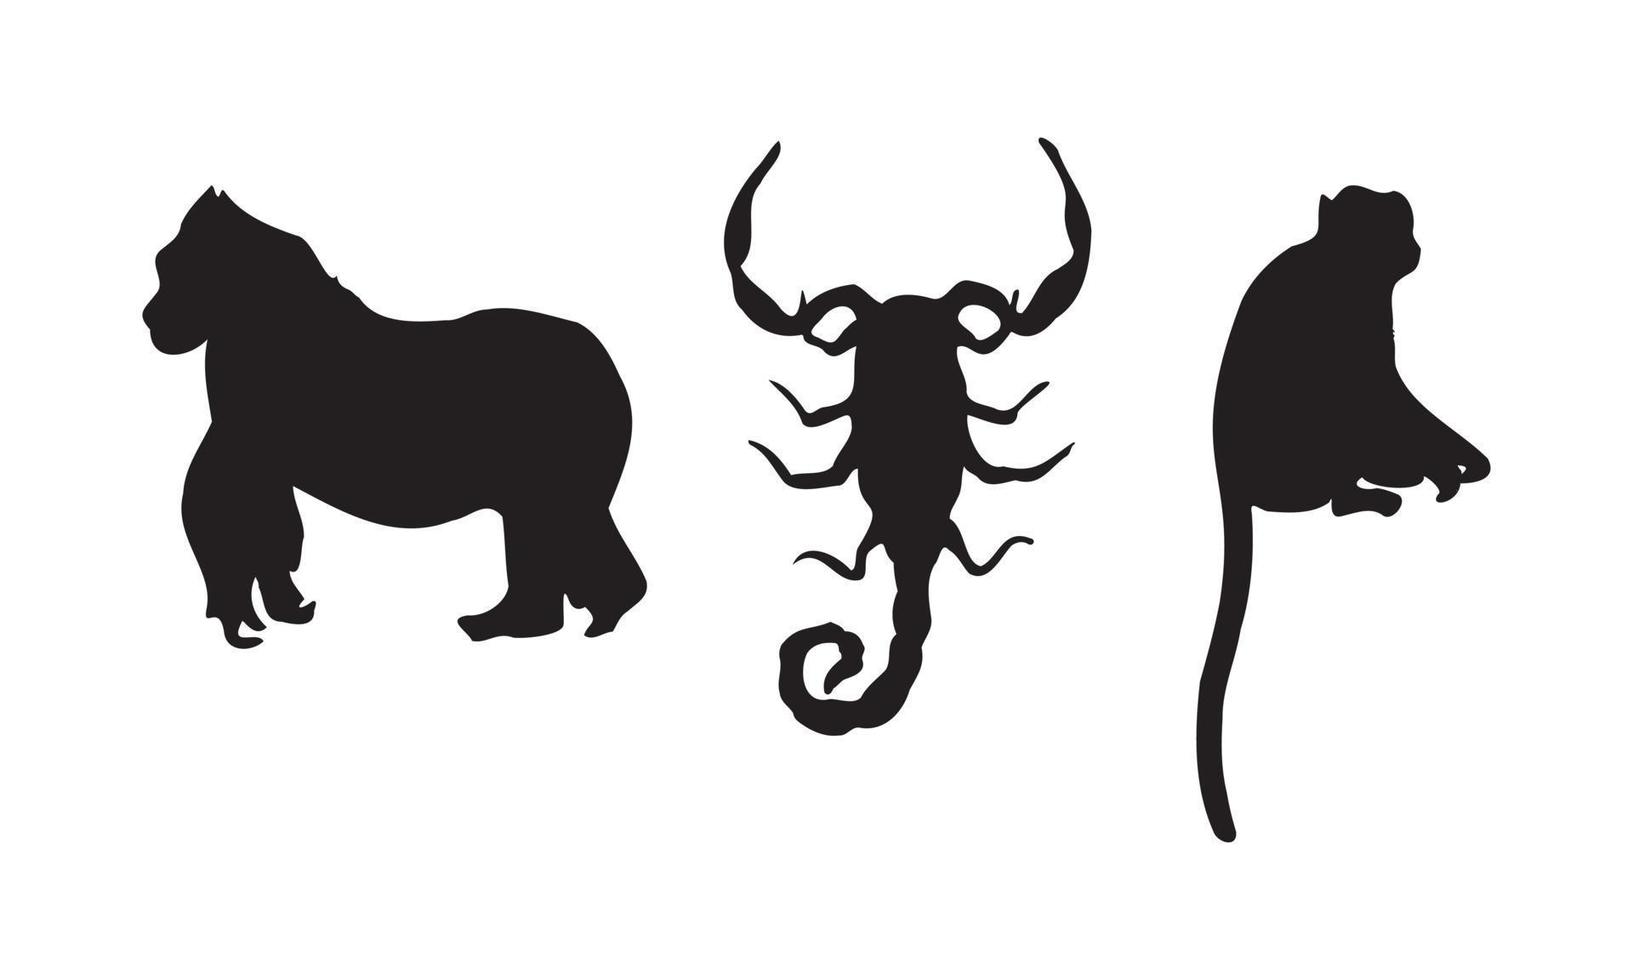 l'oggetto astratto negli stili scandinavi contemporanei. silhouette inchiostro illustrazioni vettoriali di animali